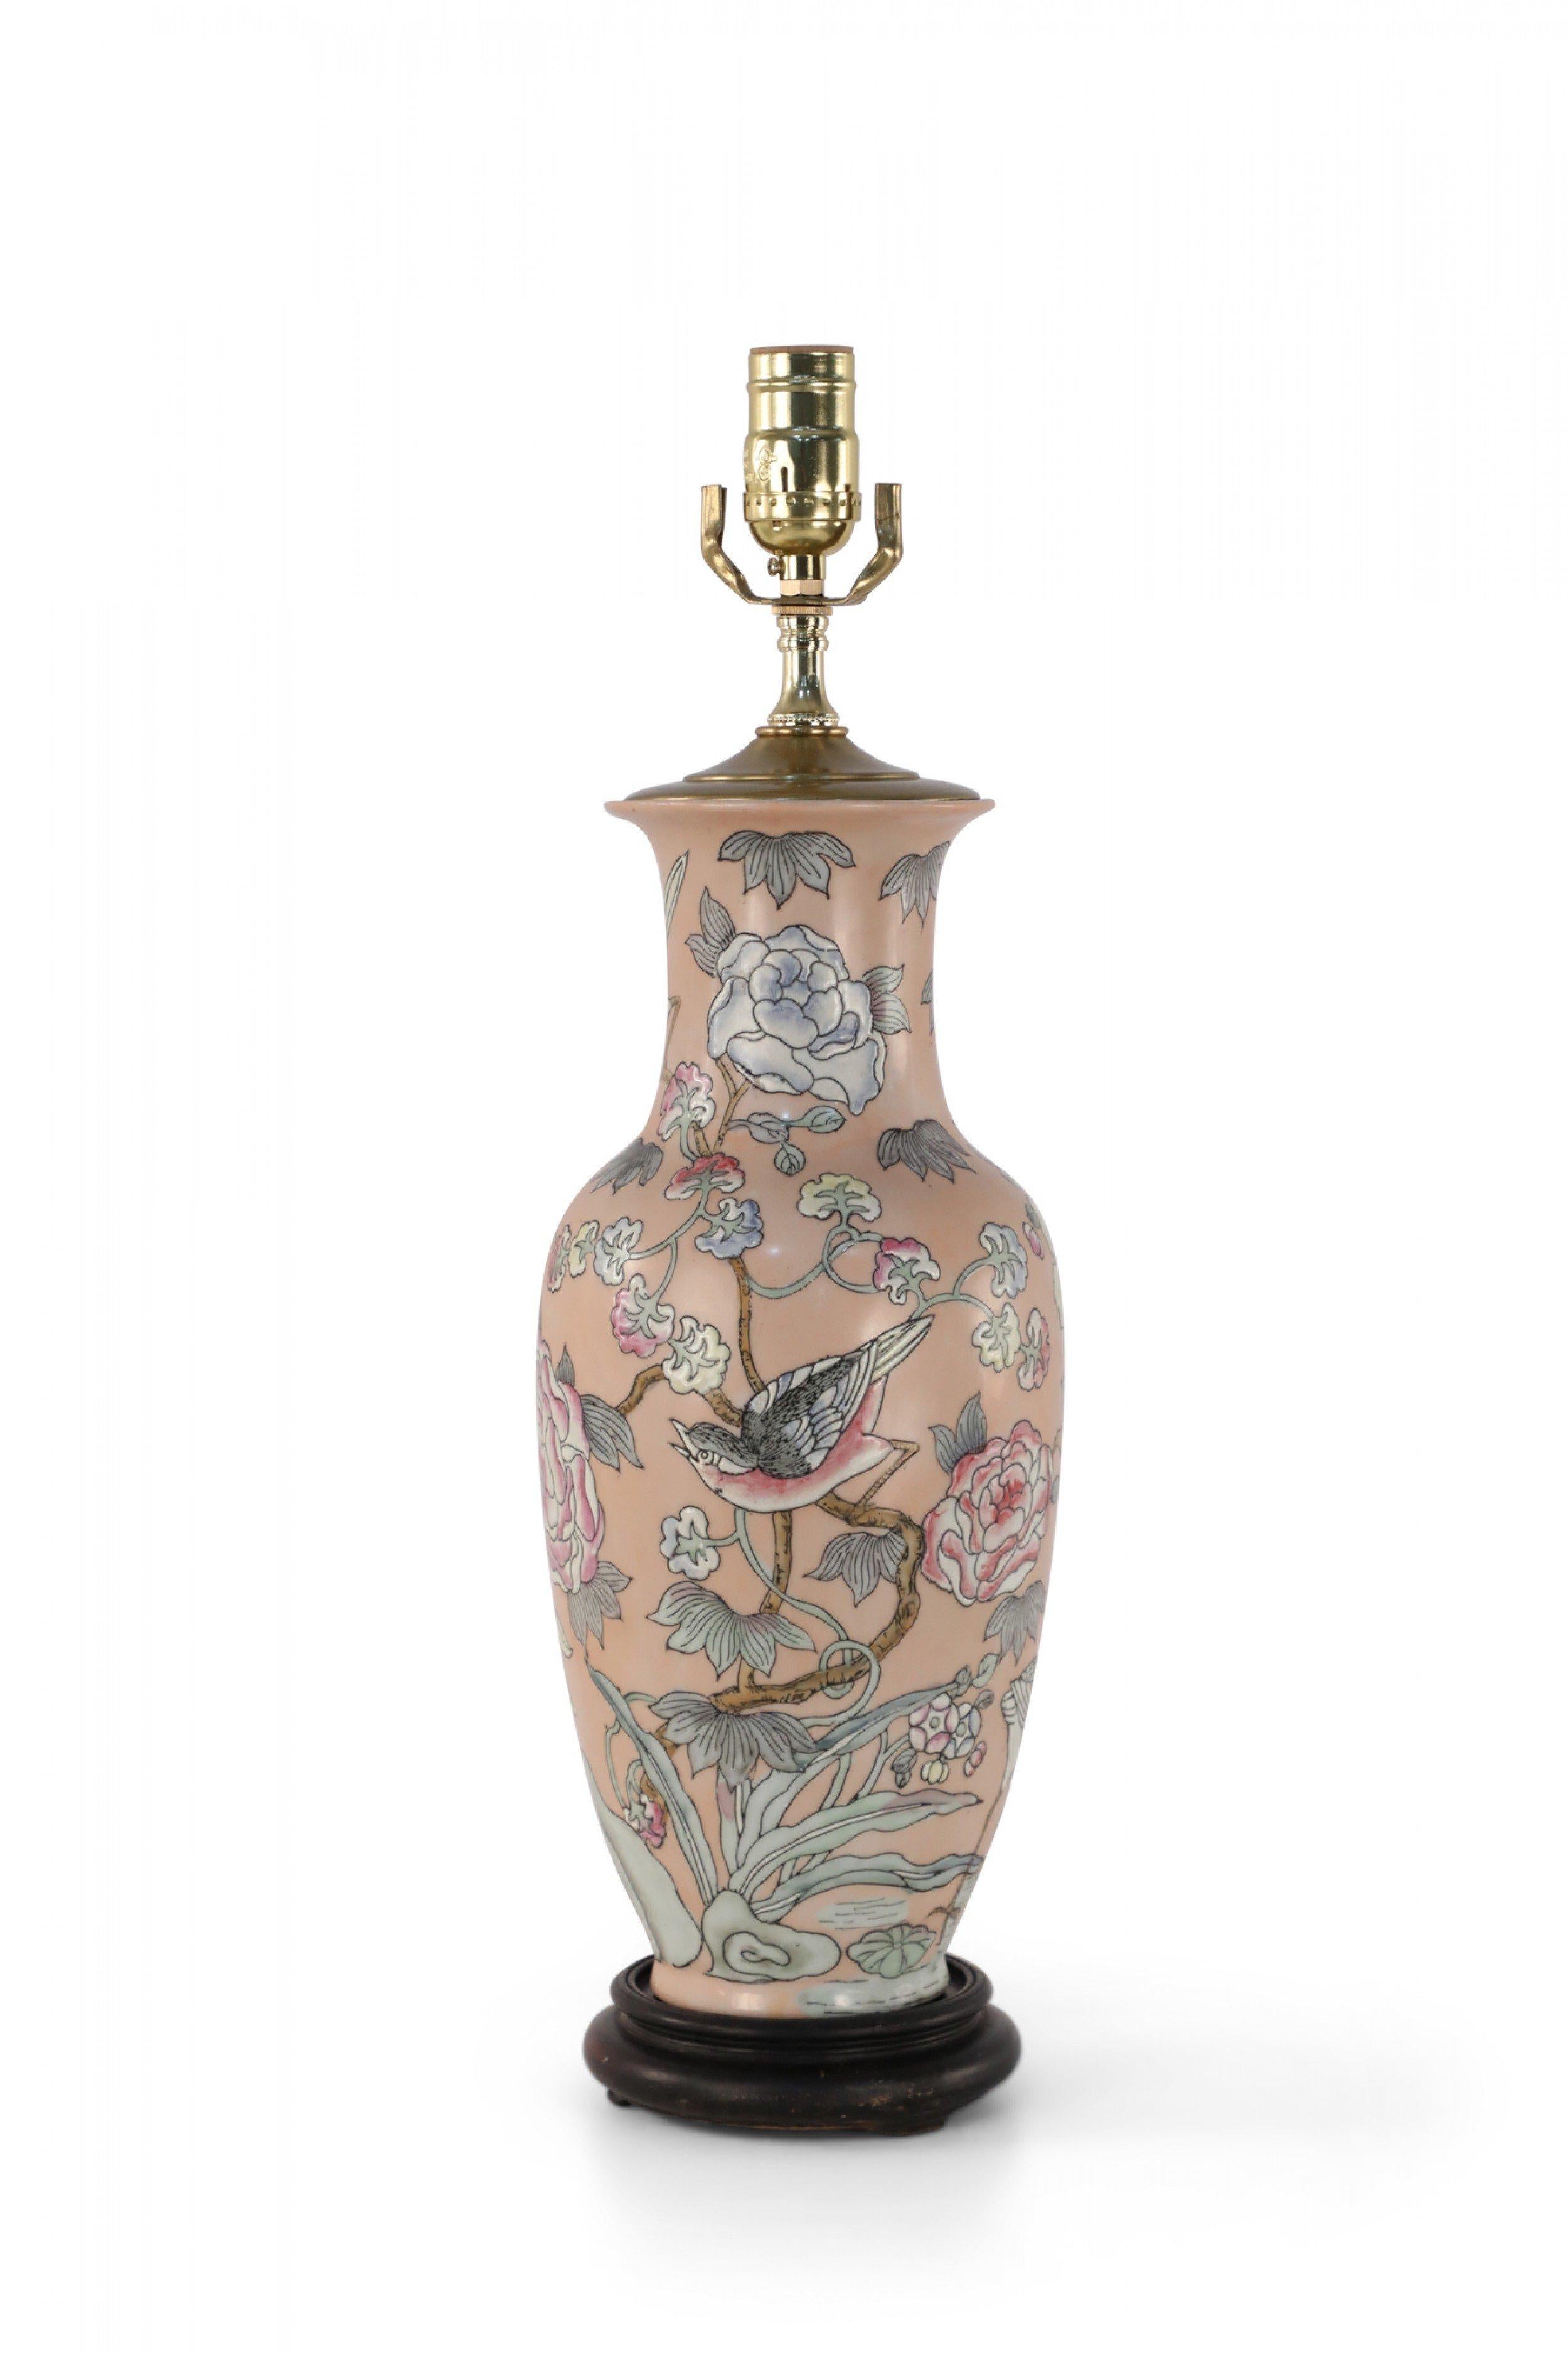 Lampe de table en porcelaine rose de Chine réalisée à partir d'un vase de forme balustre décoré de grues et de moineaux dans un environnement naturel souligné de lignes et de fleurs légèrement colorées, sur une base en bois avec des ferrures en